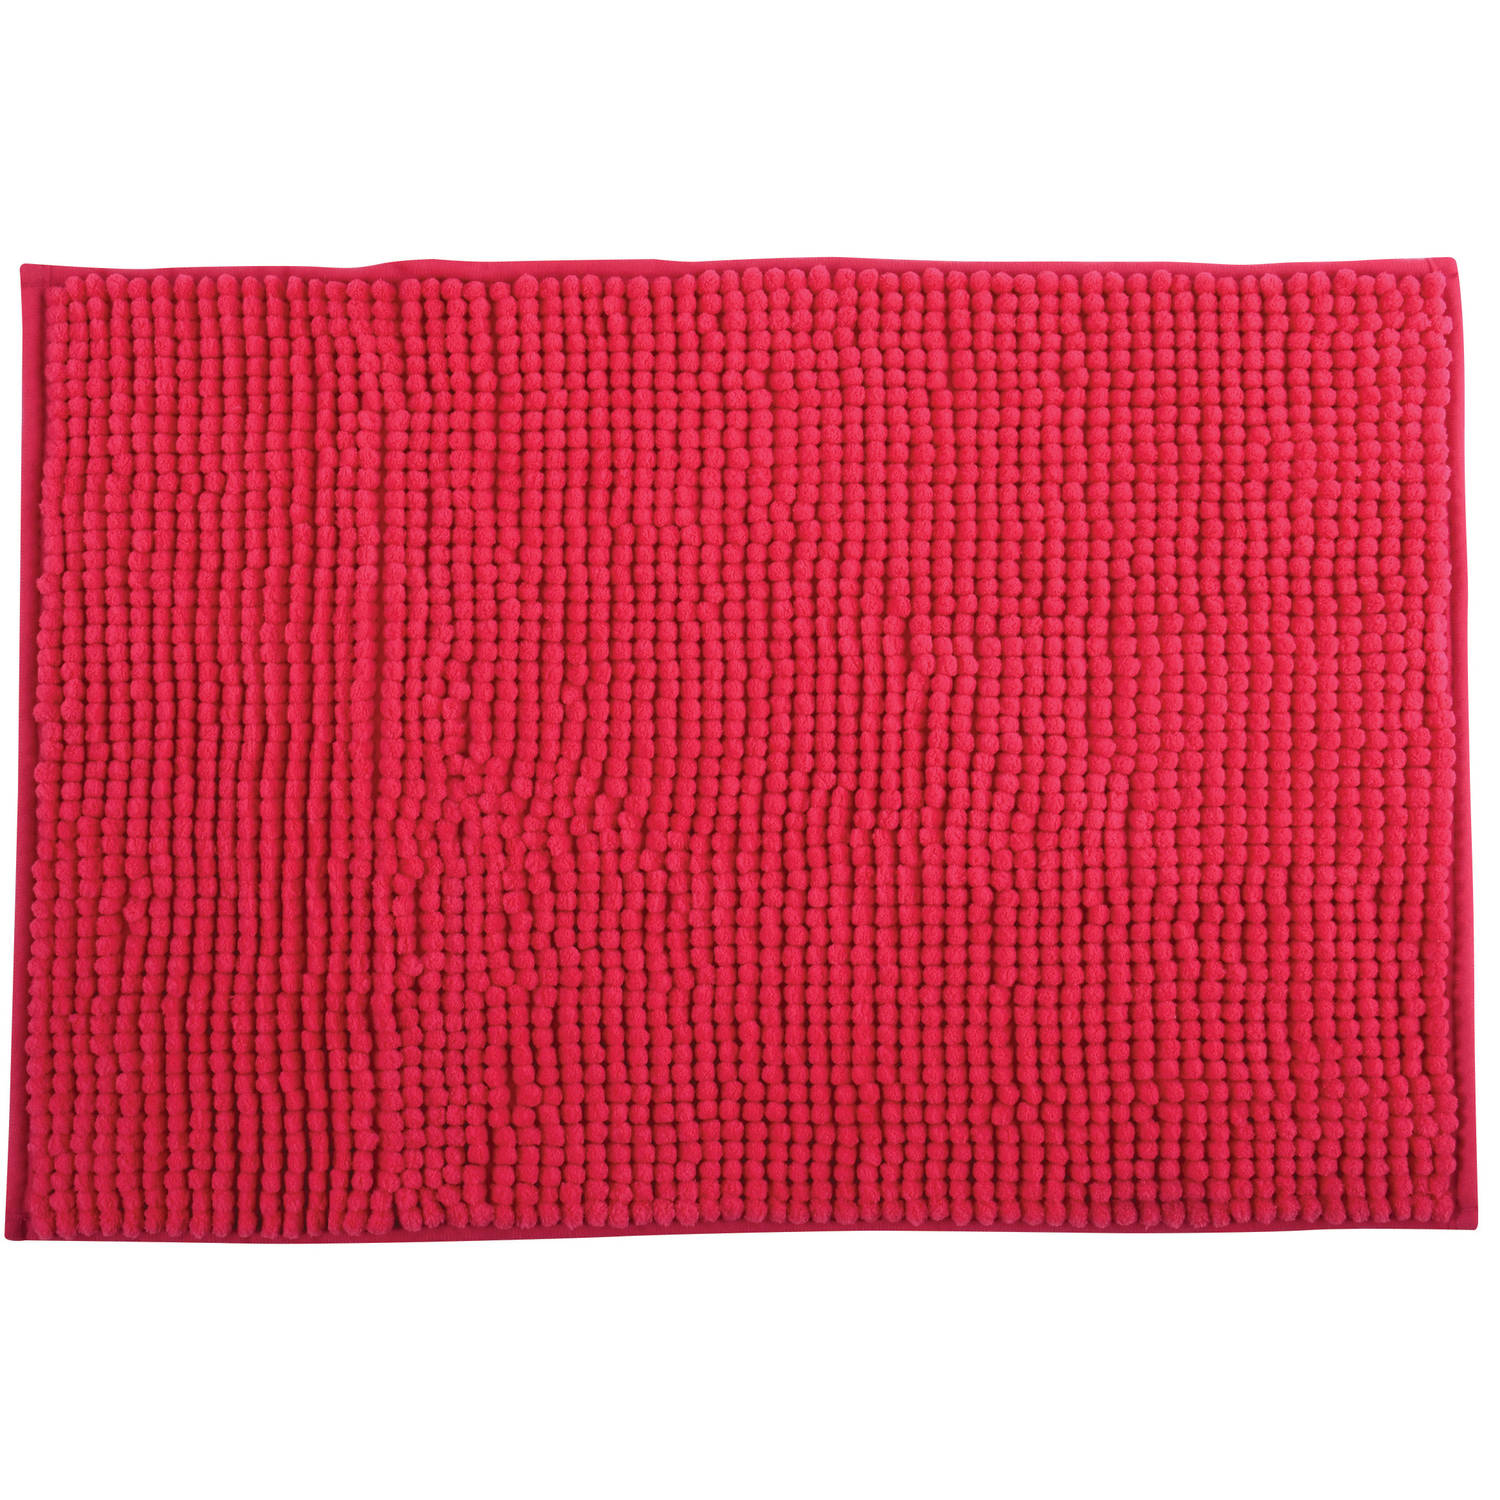 Msv Badkamerkleed-badmat Voor Op De Vloer Fuchsia Roze 40 X 60 Cm